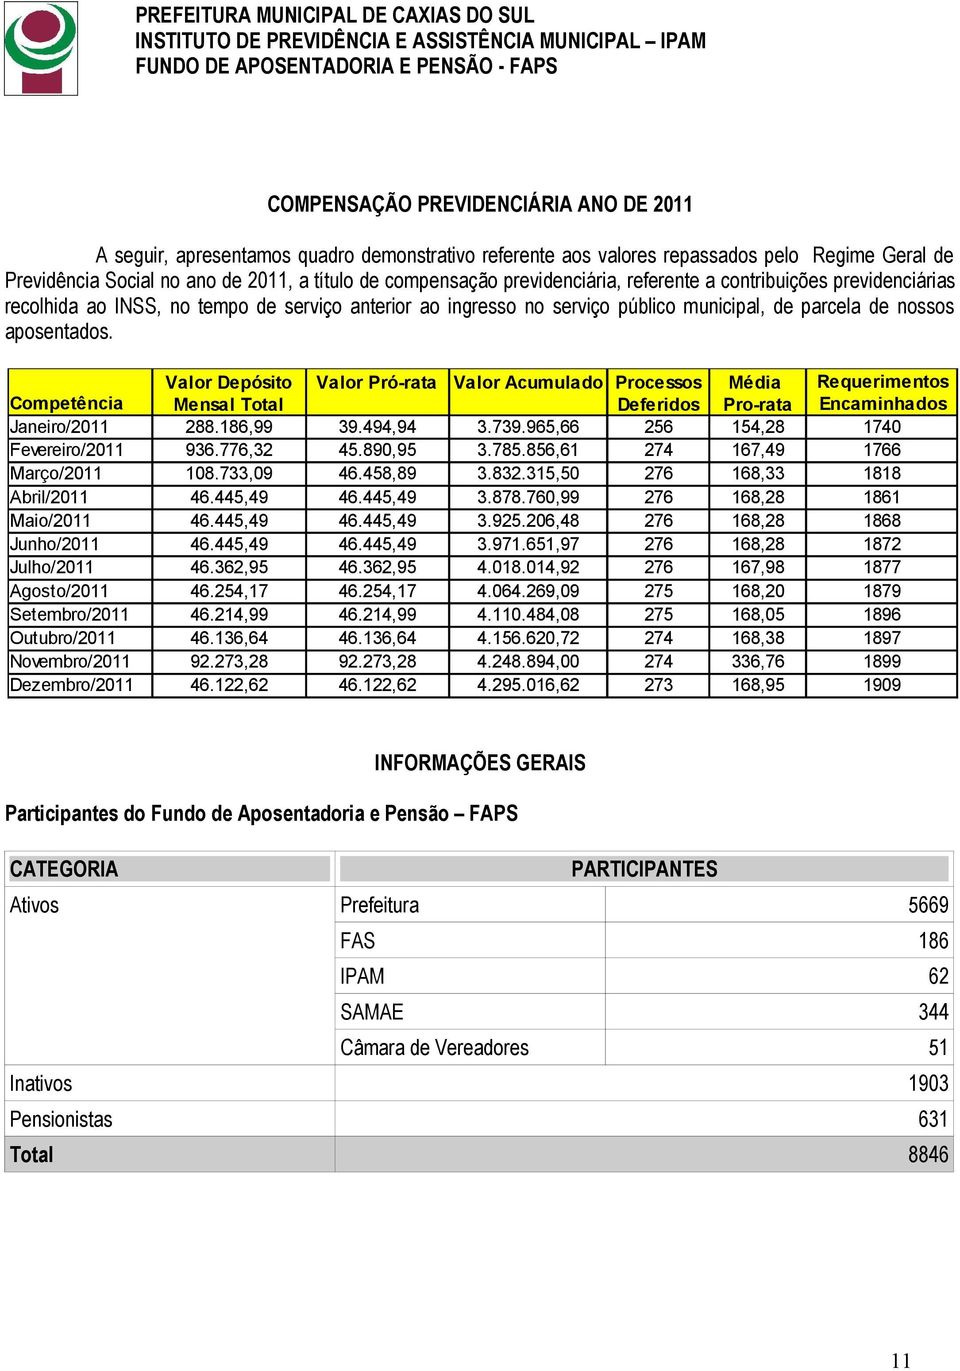 Valor Depósito Valor Pró-rata Valor Acumulado Processos Média Requerimentos Competência Mensal Total Deferidos Pro-rata Encaminhados Janeiro/2011 288.186,99 39.494,94 3.739.